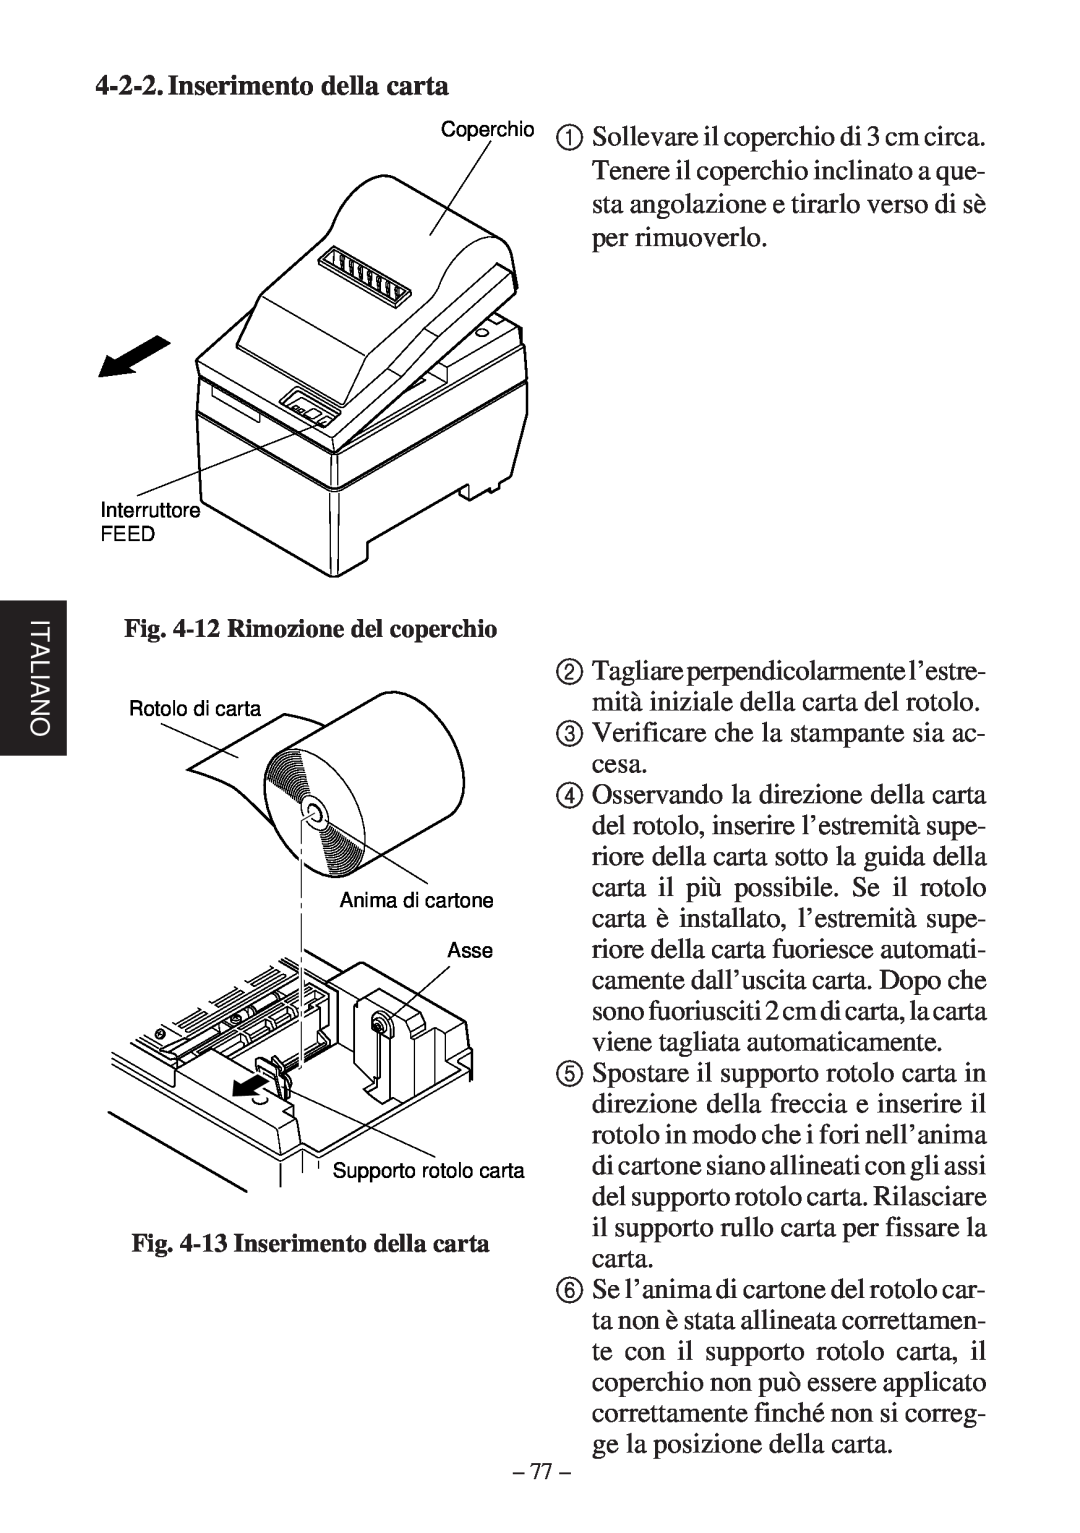 Star Micronics SP200F user manual 12 Rimozione del coperchio, 13 Inserimento della carta 